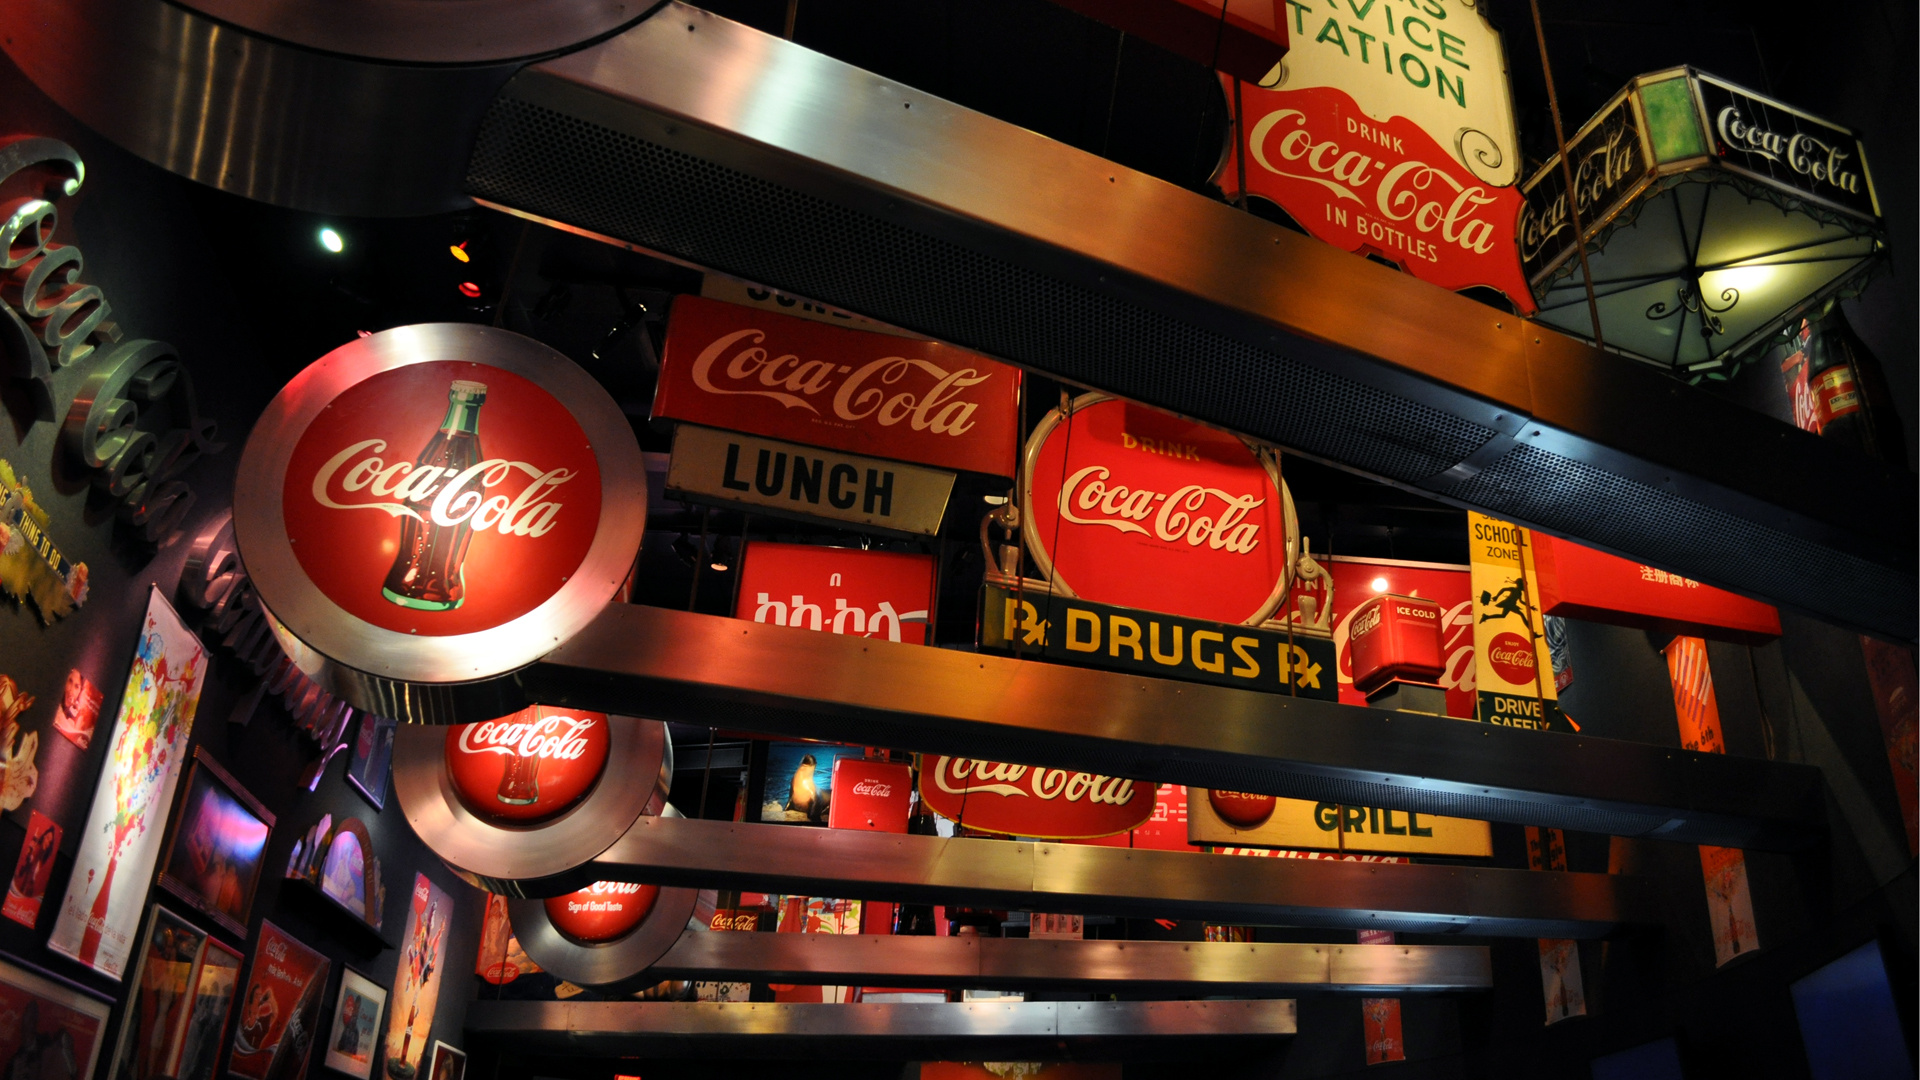 World of Coca-Cola, Atlanta travels, HD wallpapers, 1920x1080 Full HD Desktop